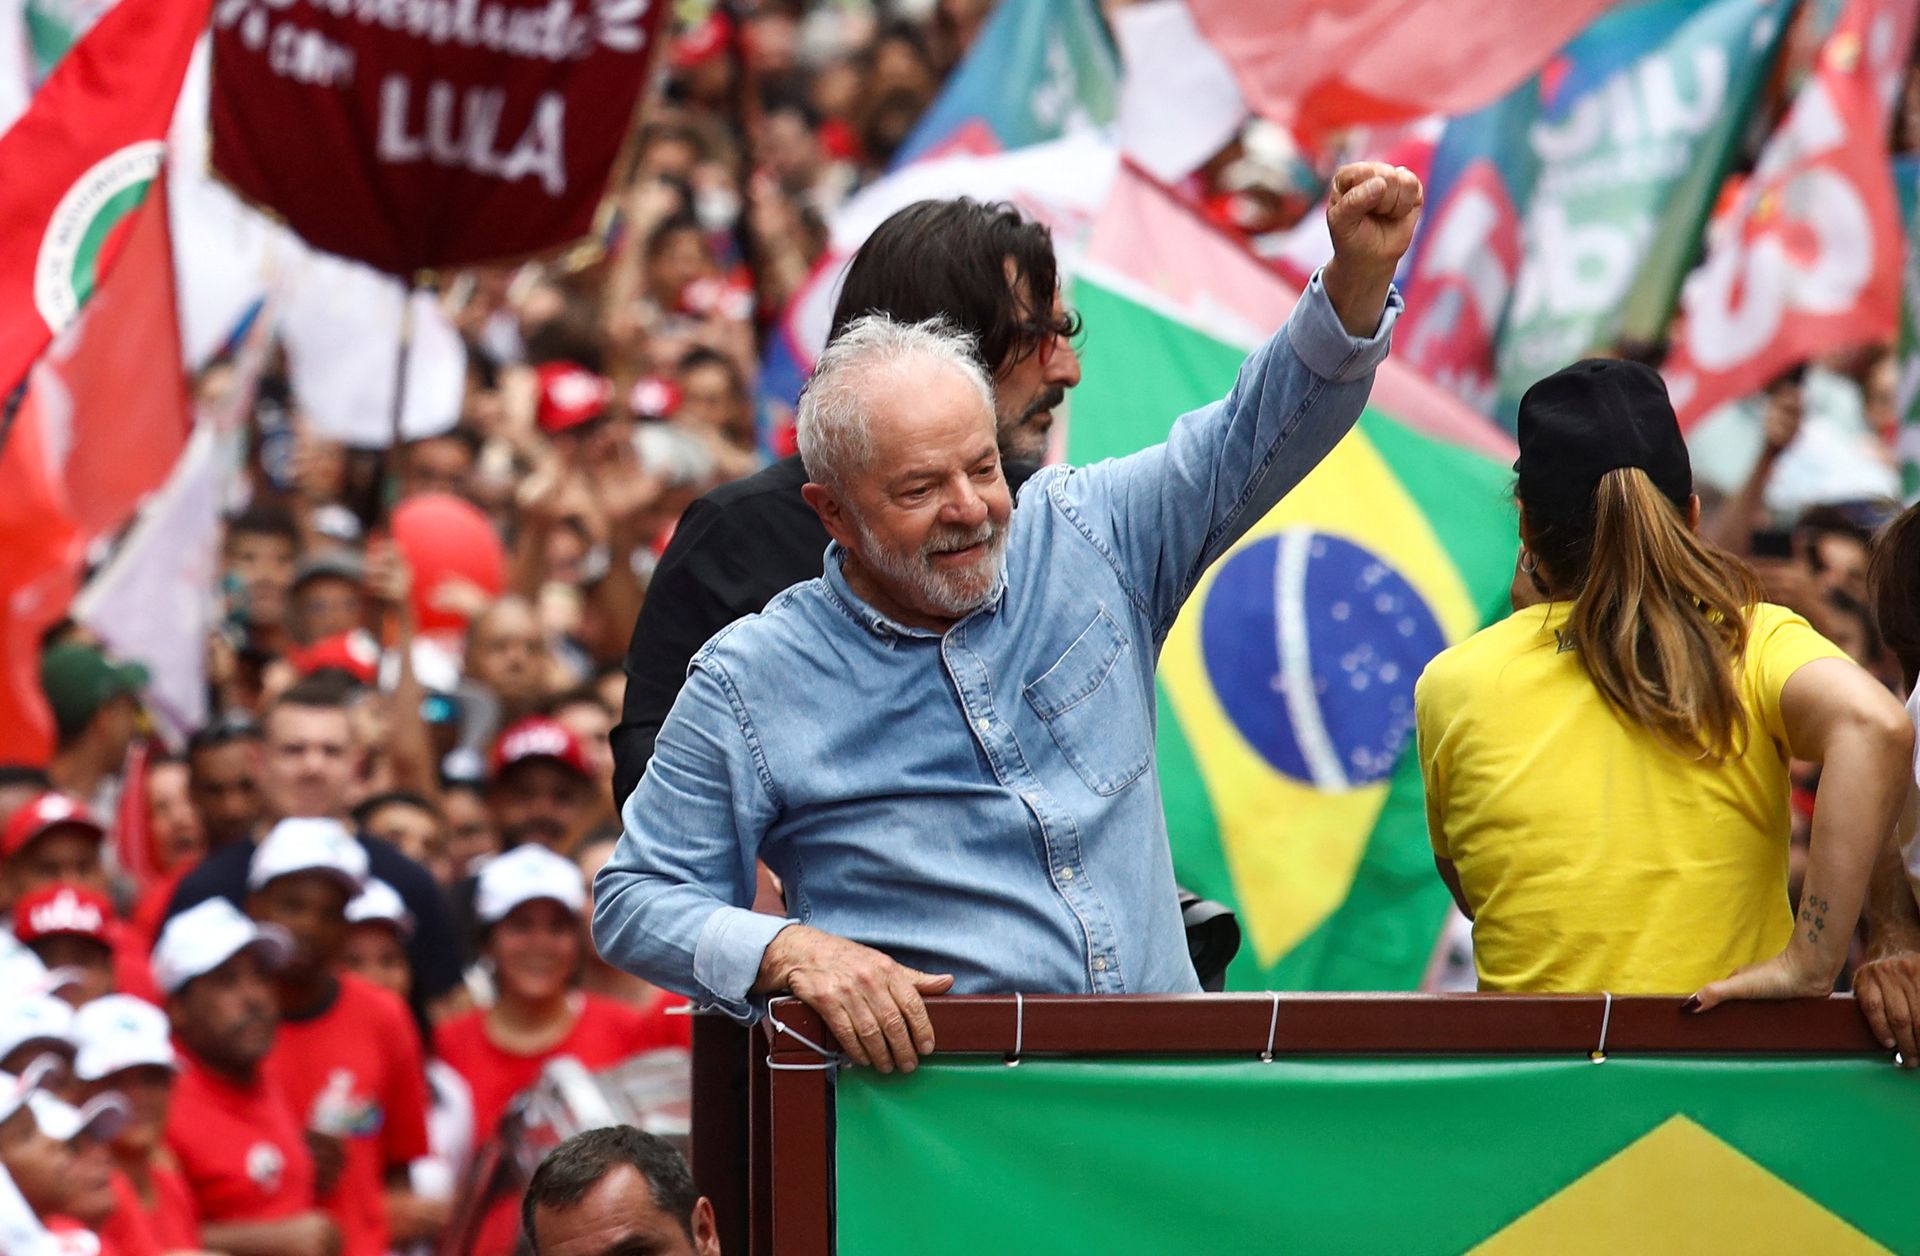 El nuevo presidente electo,  Luiz Inácio Lula da Silva, espera recuperar la acción climática en el país, dejada atrás por la presidencia anterior de Bolsonaro. - Foto Carla Carniel/Reuters